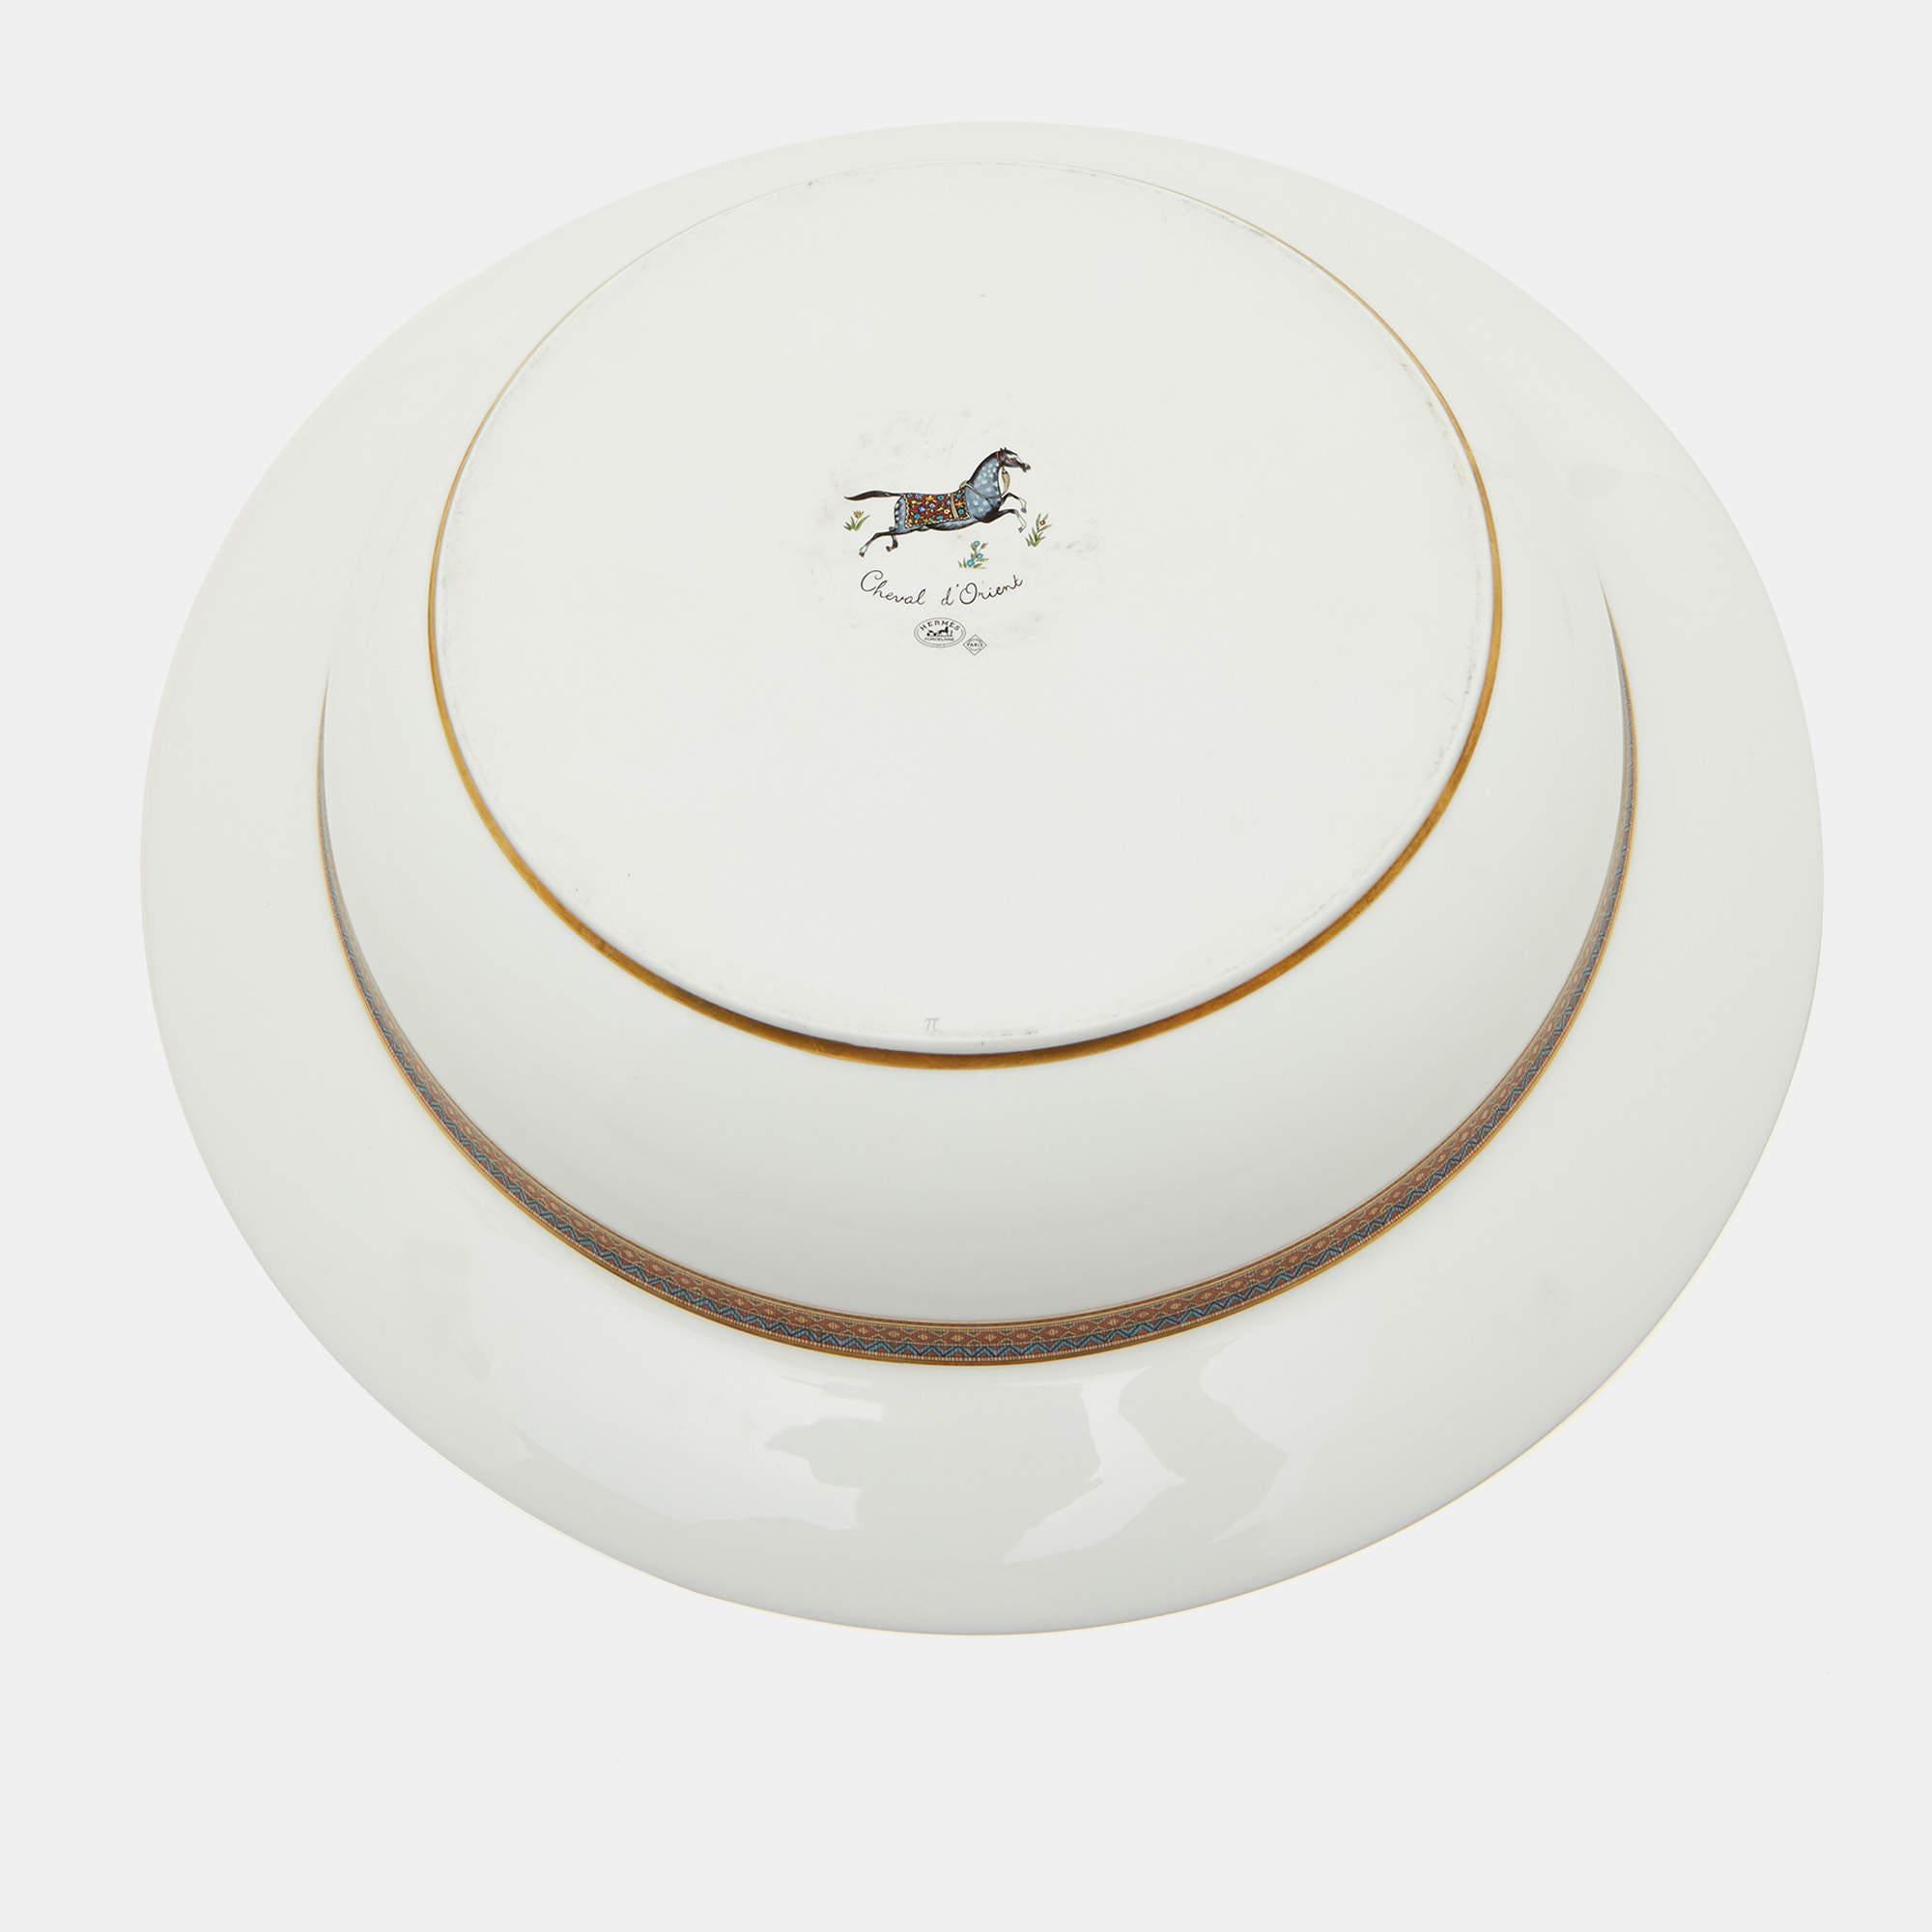 Le set de plateaux de centre de table Hermès témoigne d'un luxe raffiné. Fabriqué en porcelaine d'un blanc immaculé, chaque plat est orné d'un motif exquis, Cheval d'Orient, qui évoque l'élégance équestre. Idéal pour les réceptions élégantes, ce set